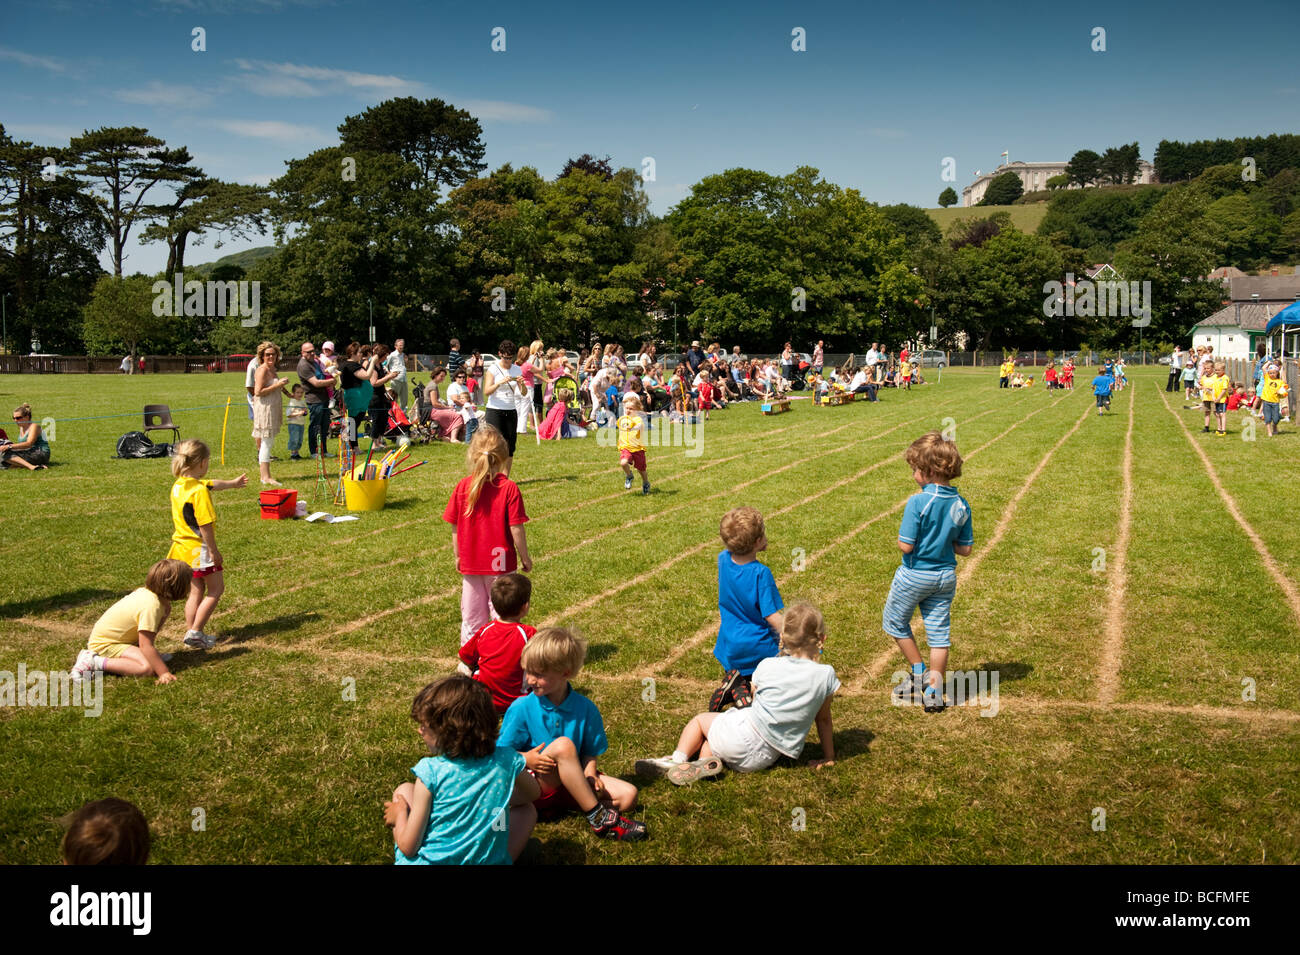 Kleinkinder im Wettbewerb in den Rennen am Sporttag Primarschule, wales Aberystwyth UK Stockfoto